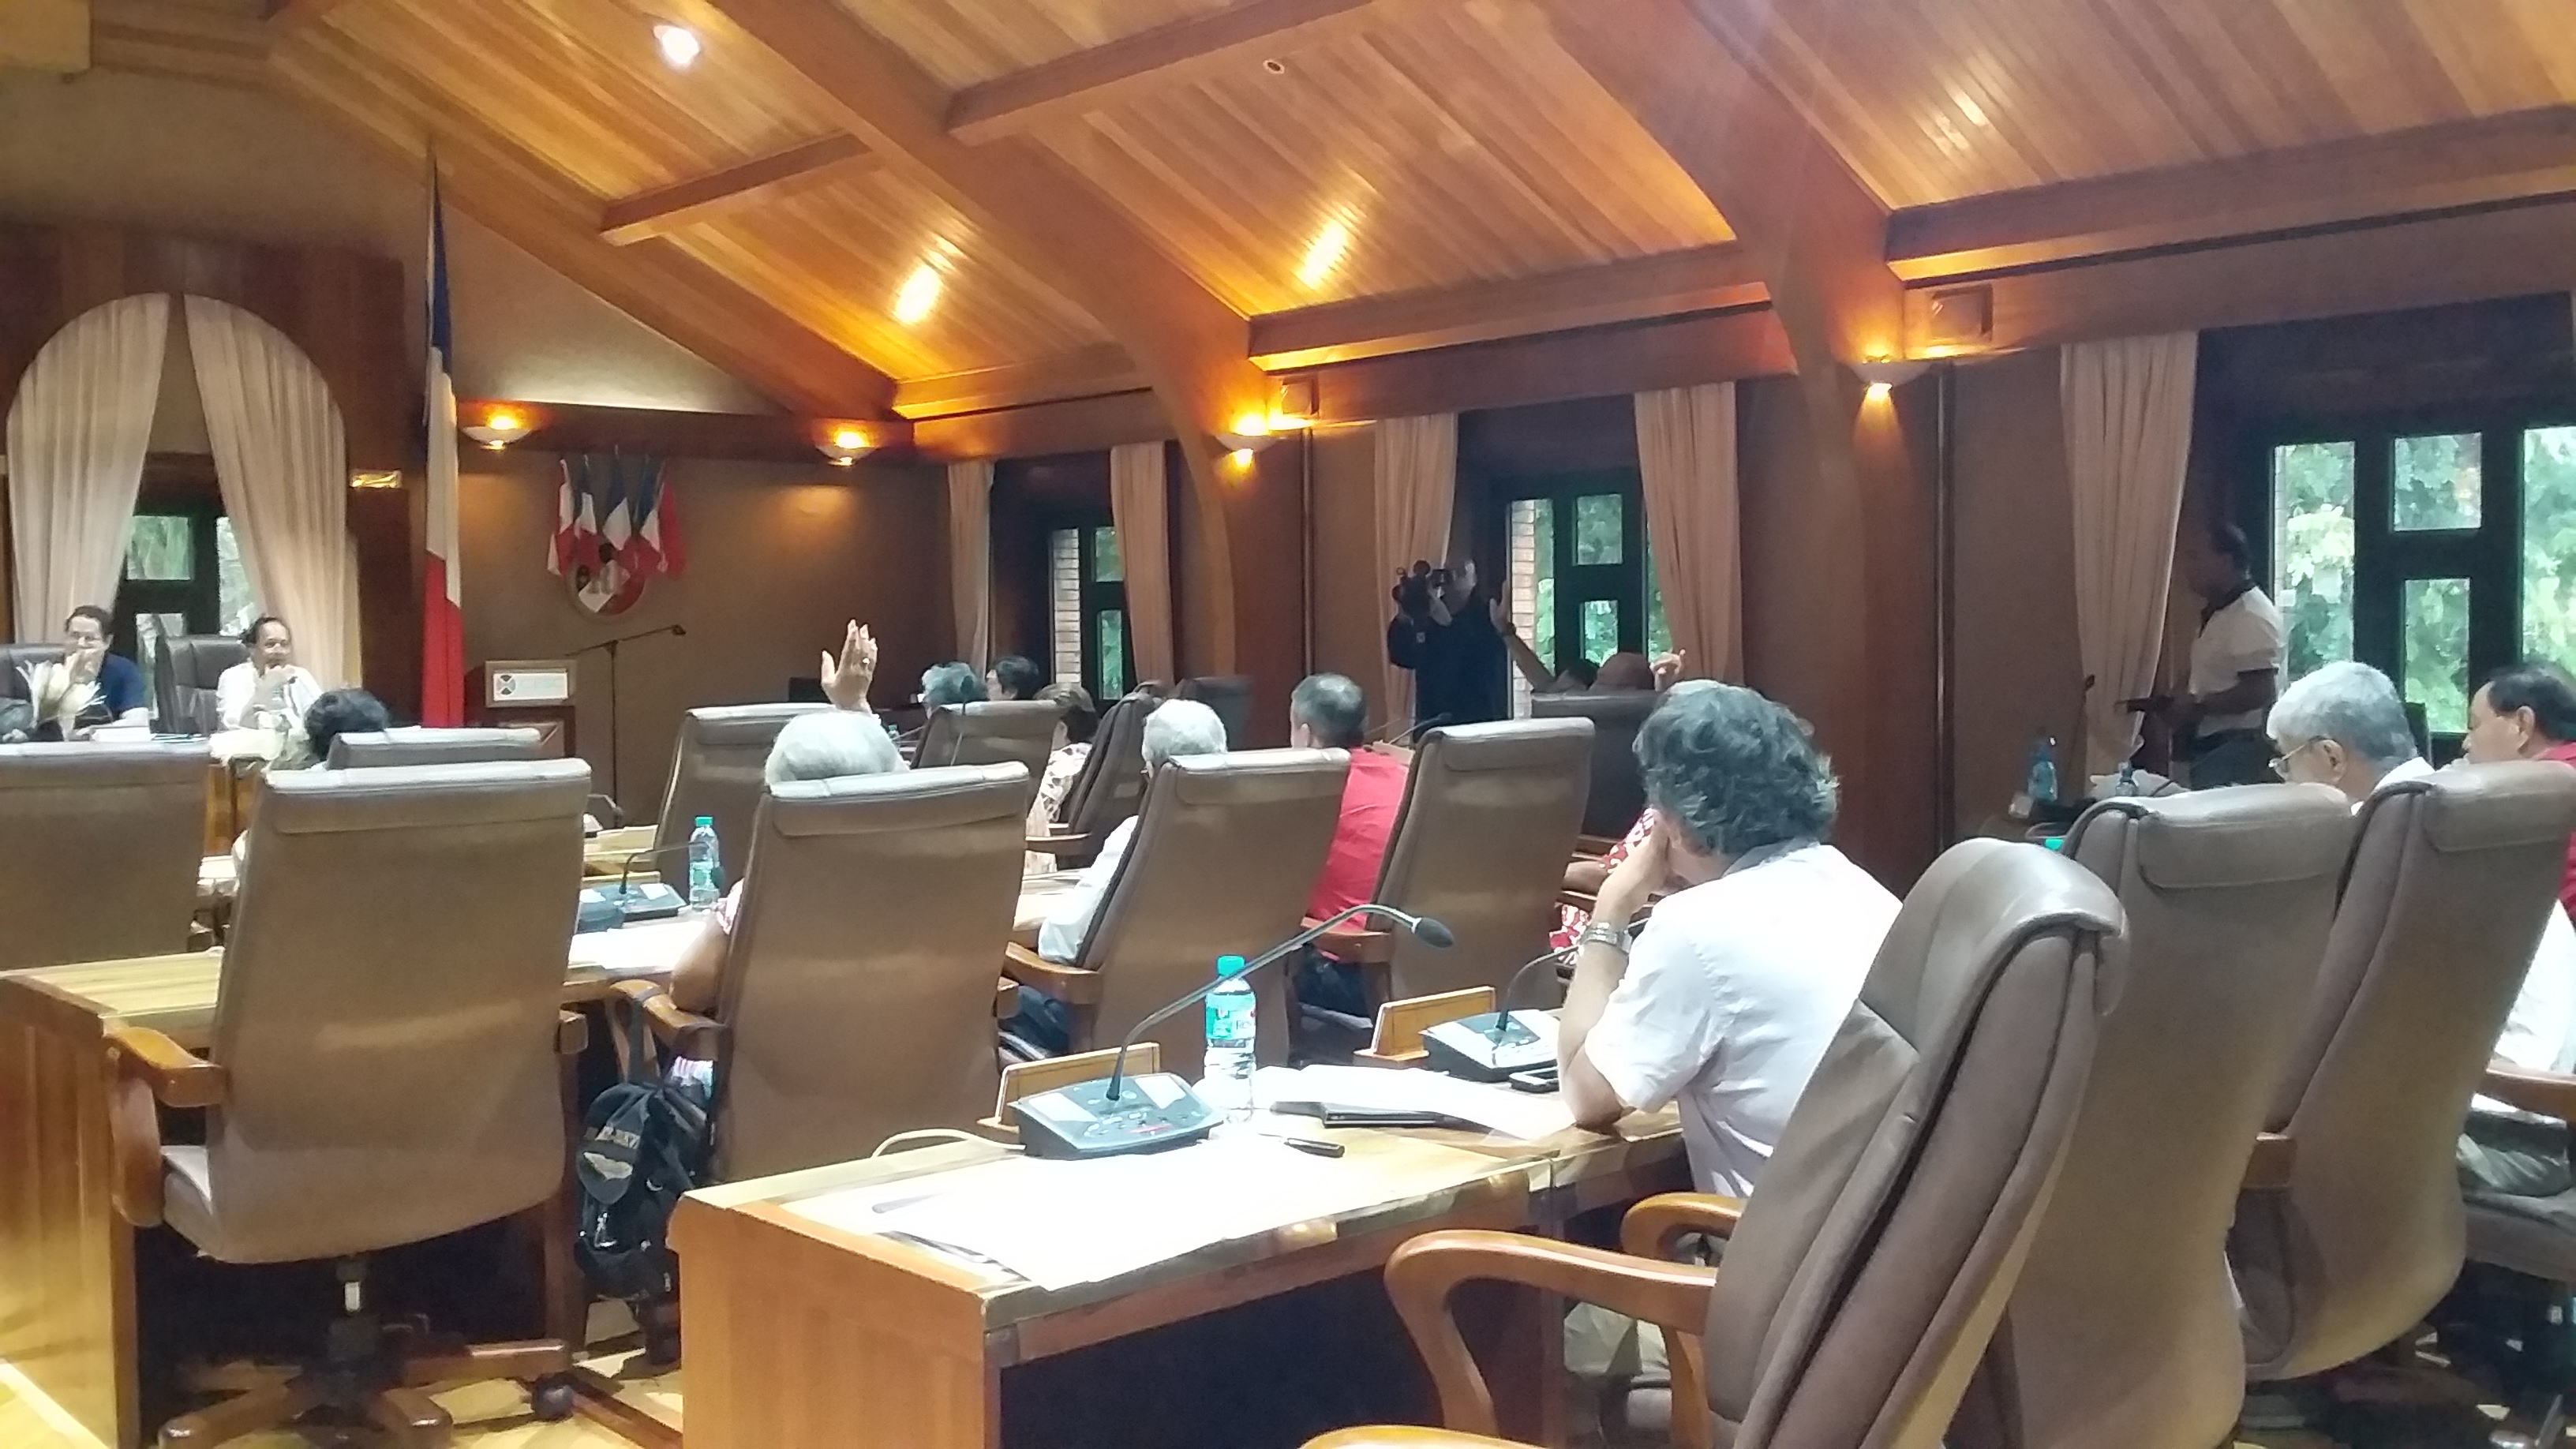 Le CESC regrette que le projet de loi du Pays concerne uniquement le secteur privé et non les fonctions publiques de la Polynésie française et des communes, qui regroupent près de 10 000 agents publics salariés.